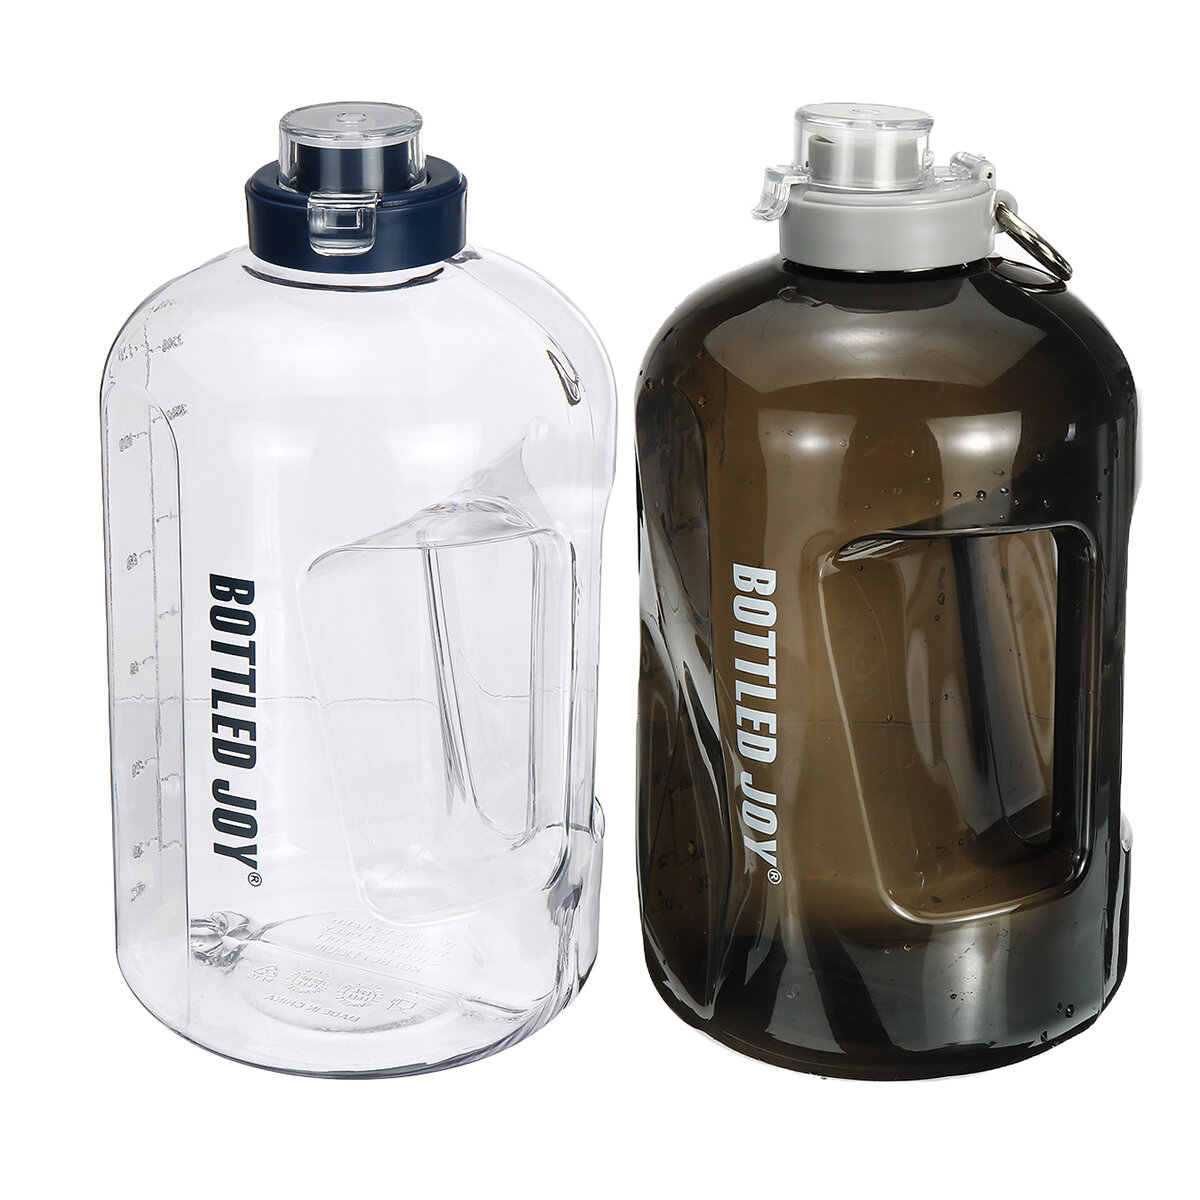 زجاجة مياه رياضية سعة كبيرة 3.78 لتر مع غطاء للتدريب في الصالة الرياضية والتخييم والمشي وركوب الدراجات